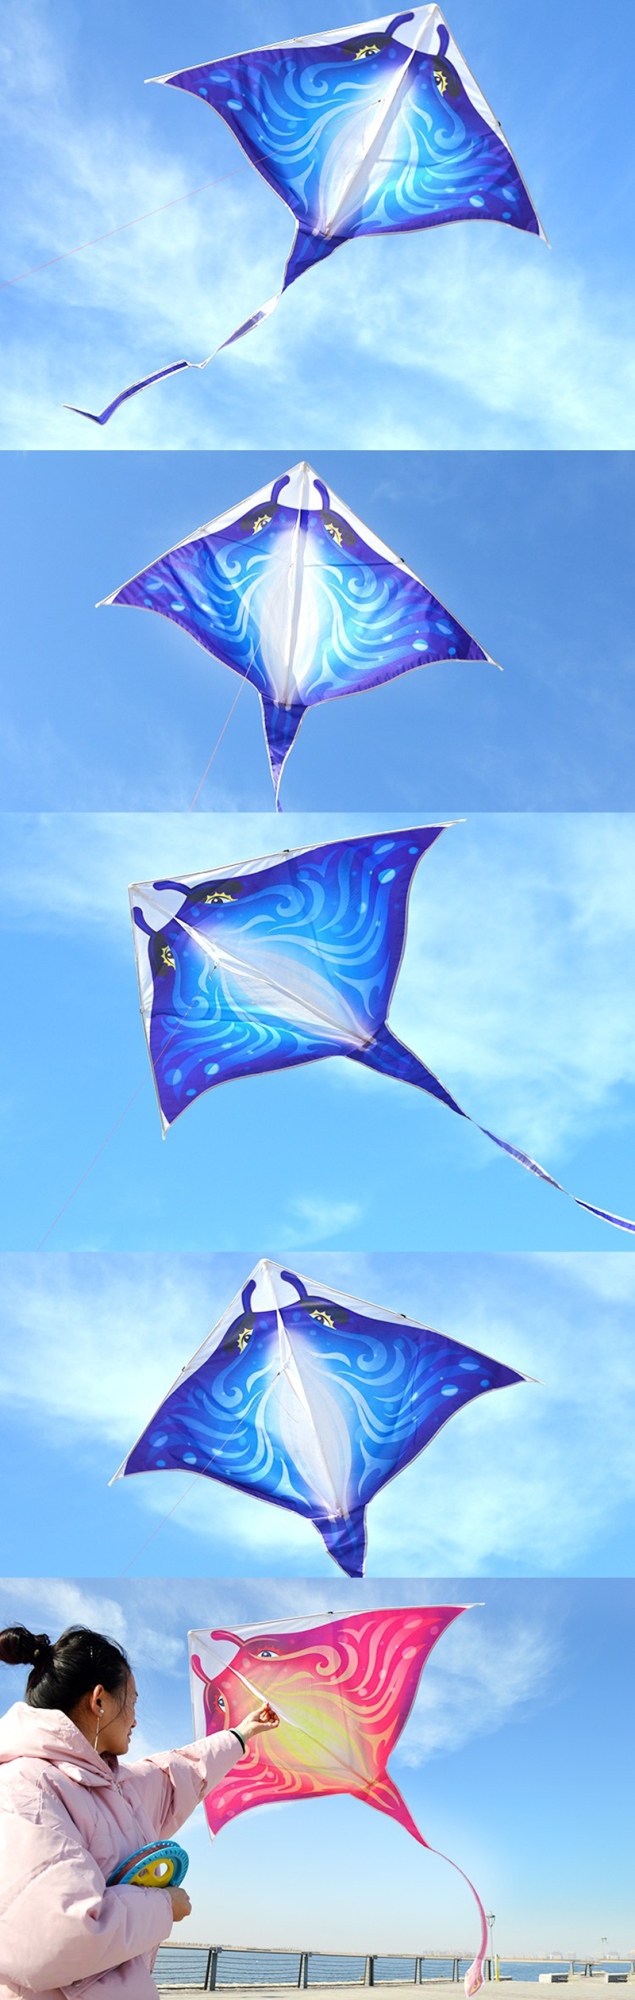 Frete grátis delta pipas voando brinquedos para crianças kites linha